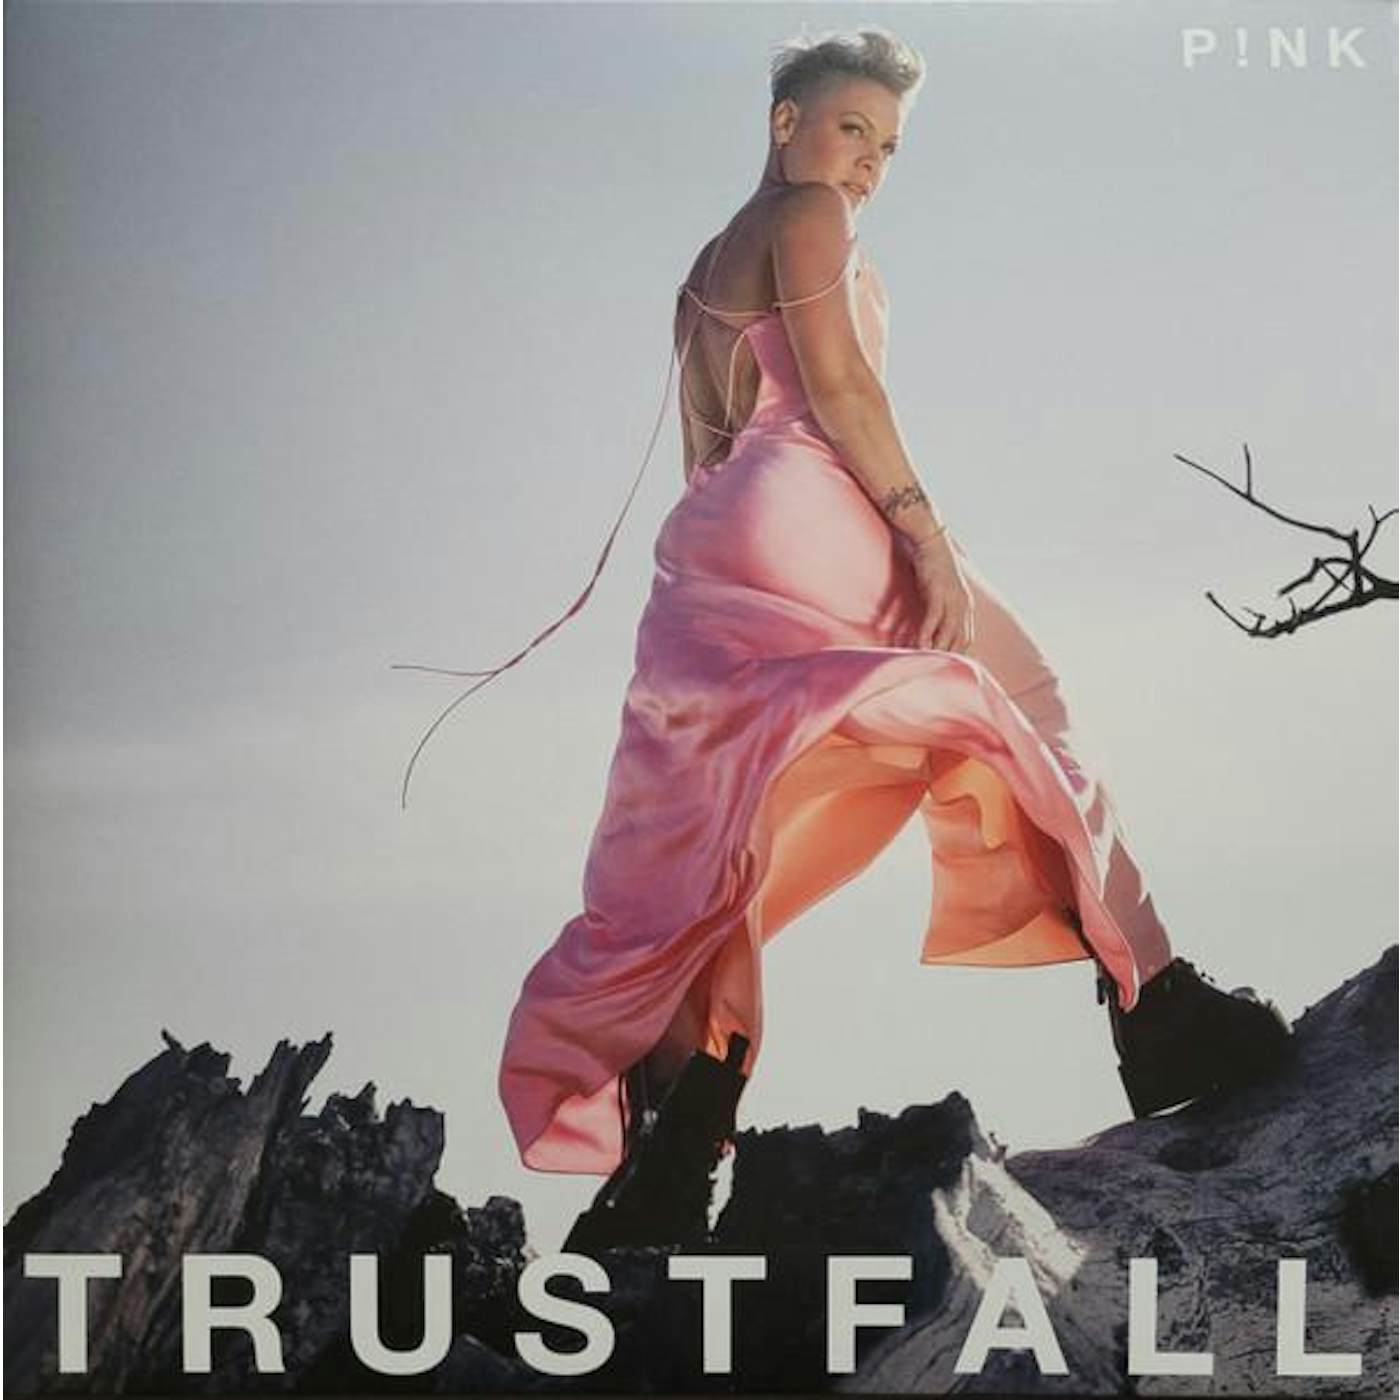 TRUSTFALL (P!nk VINYL) Vinyl Record